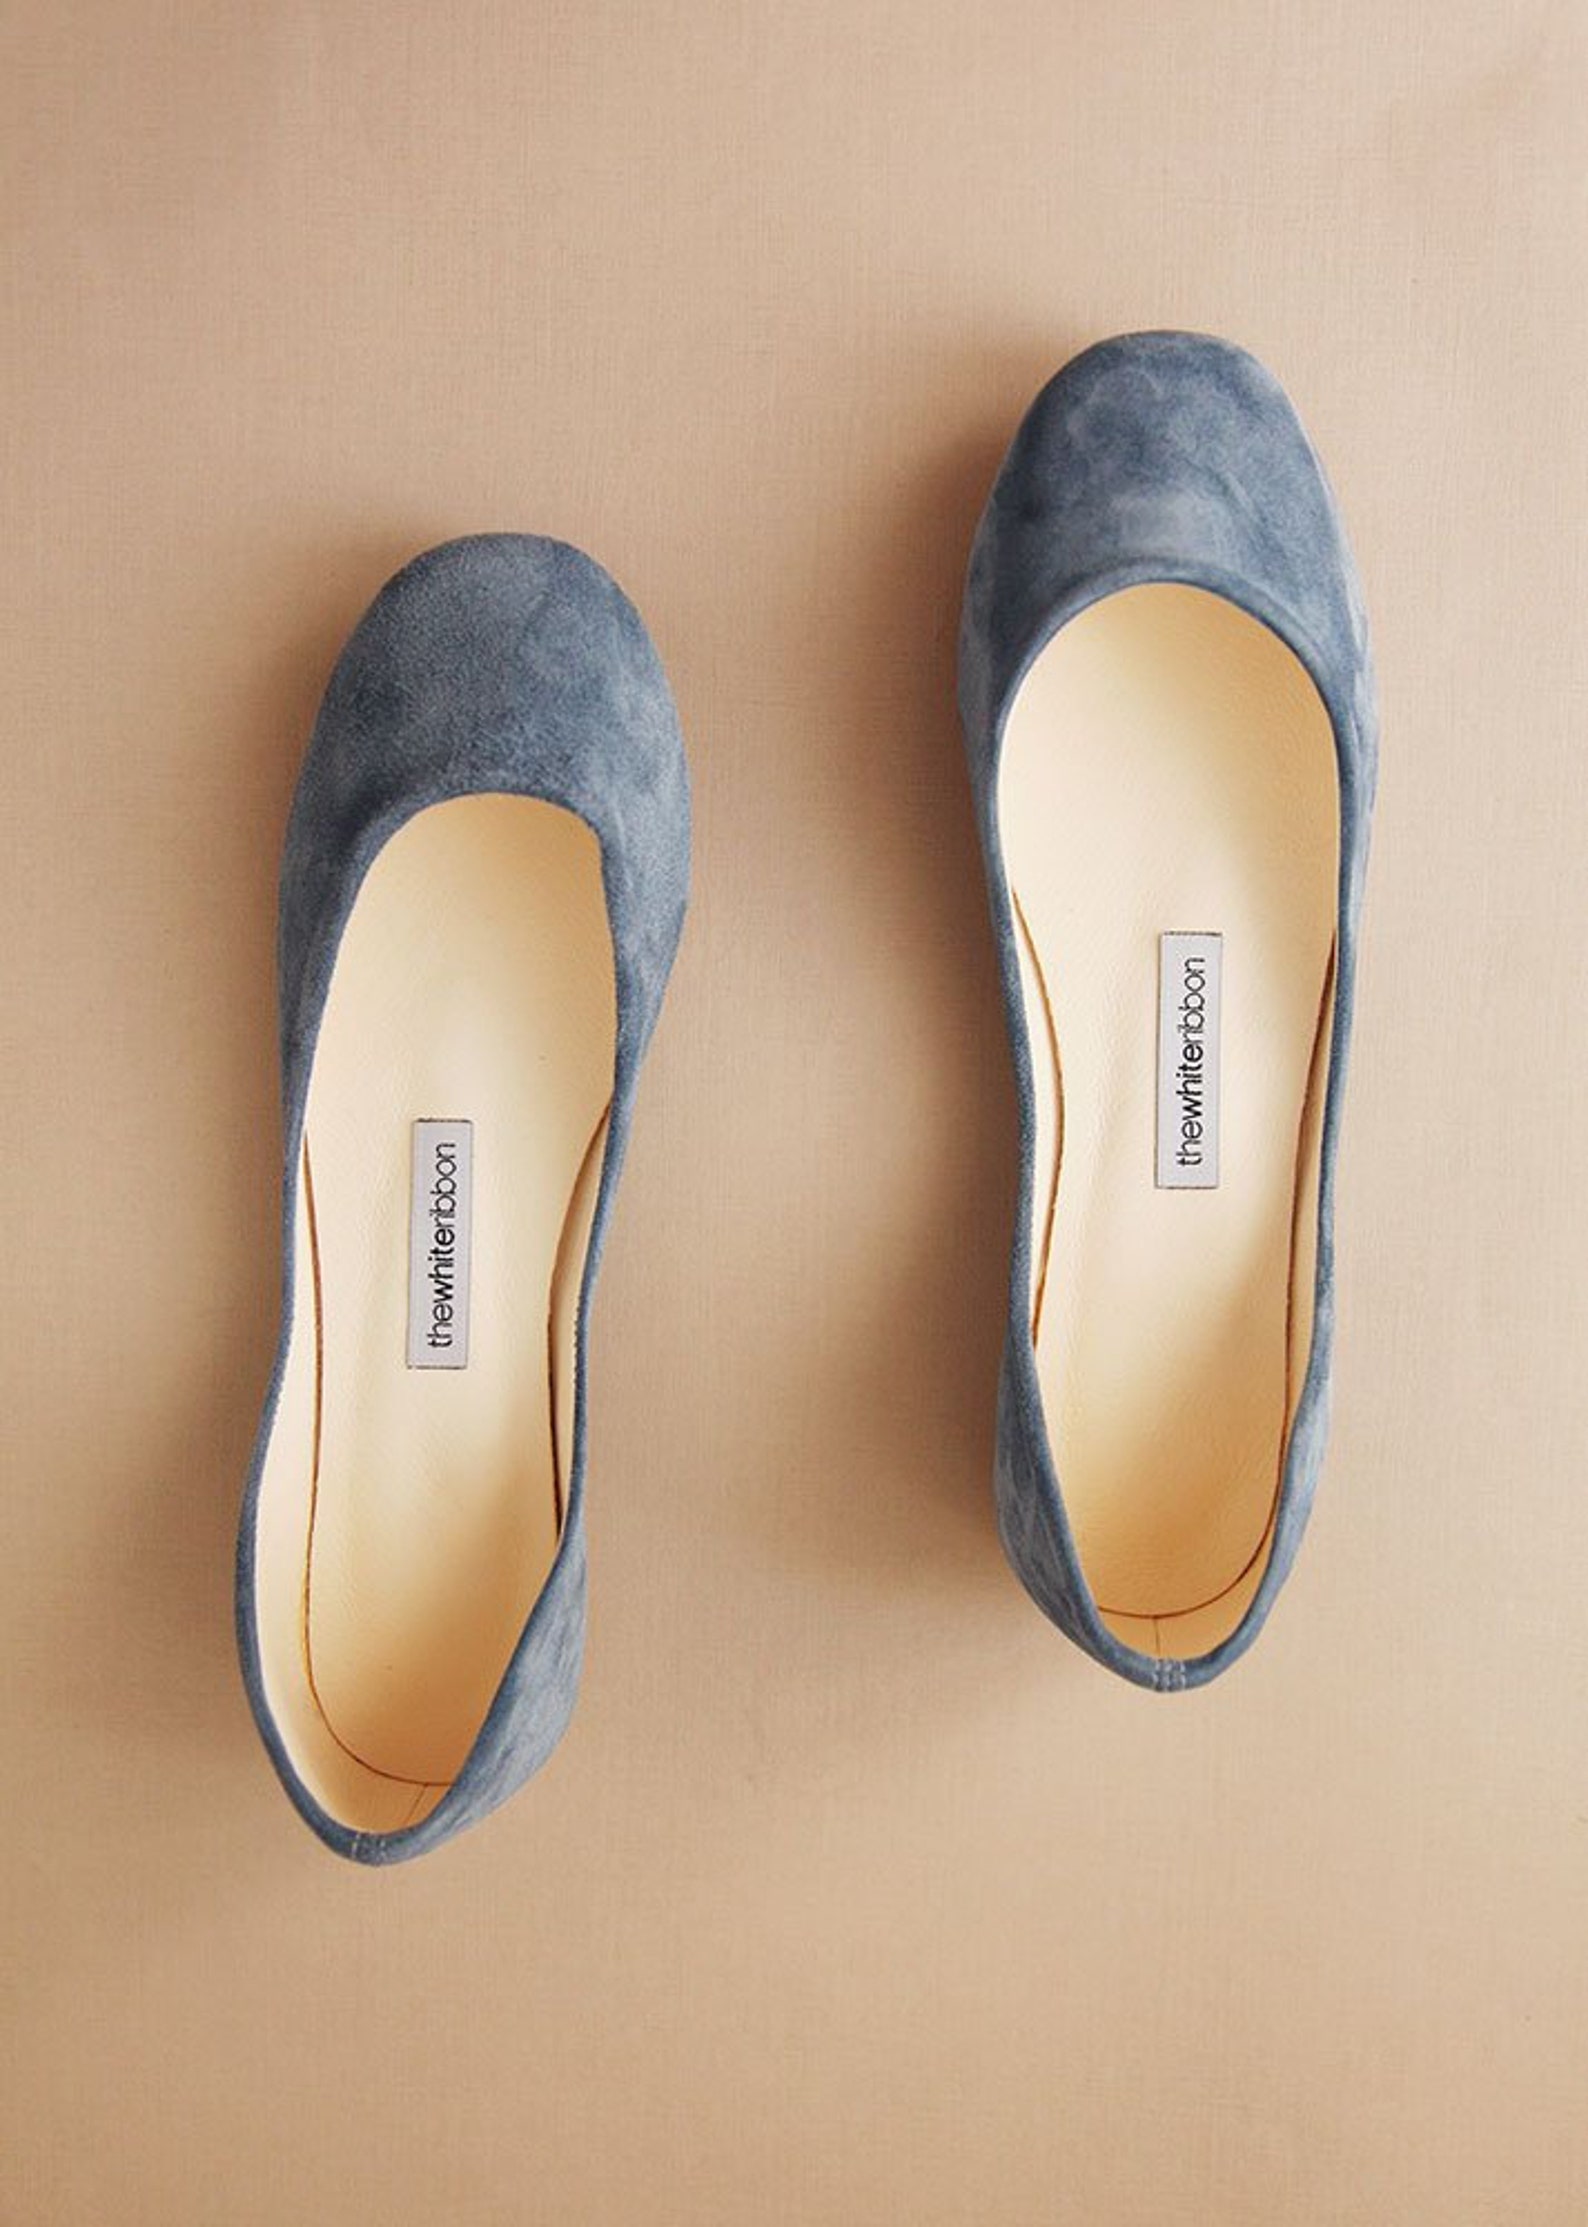 pastel blue suede ballet flats | minimalist suede leather shoes | blue leather shoes ballerina style shoes flats low heel | past